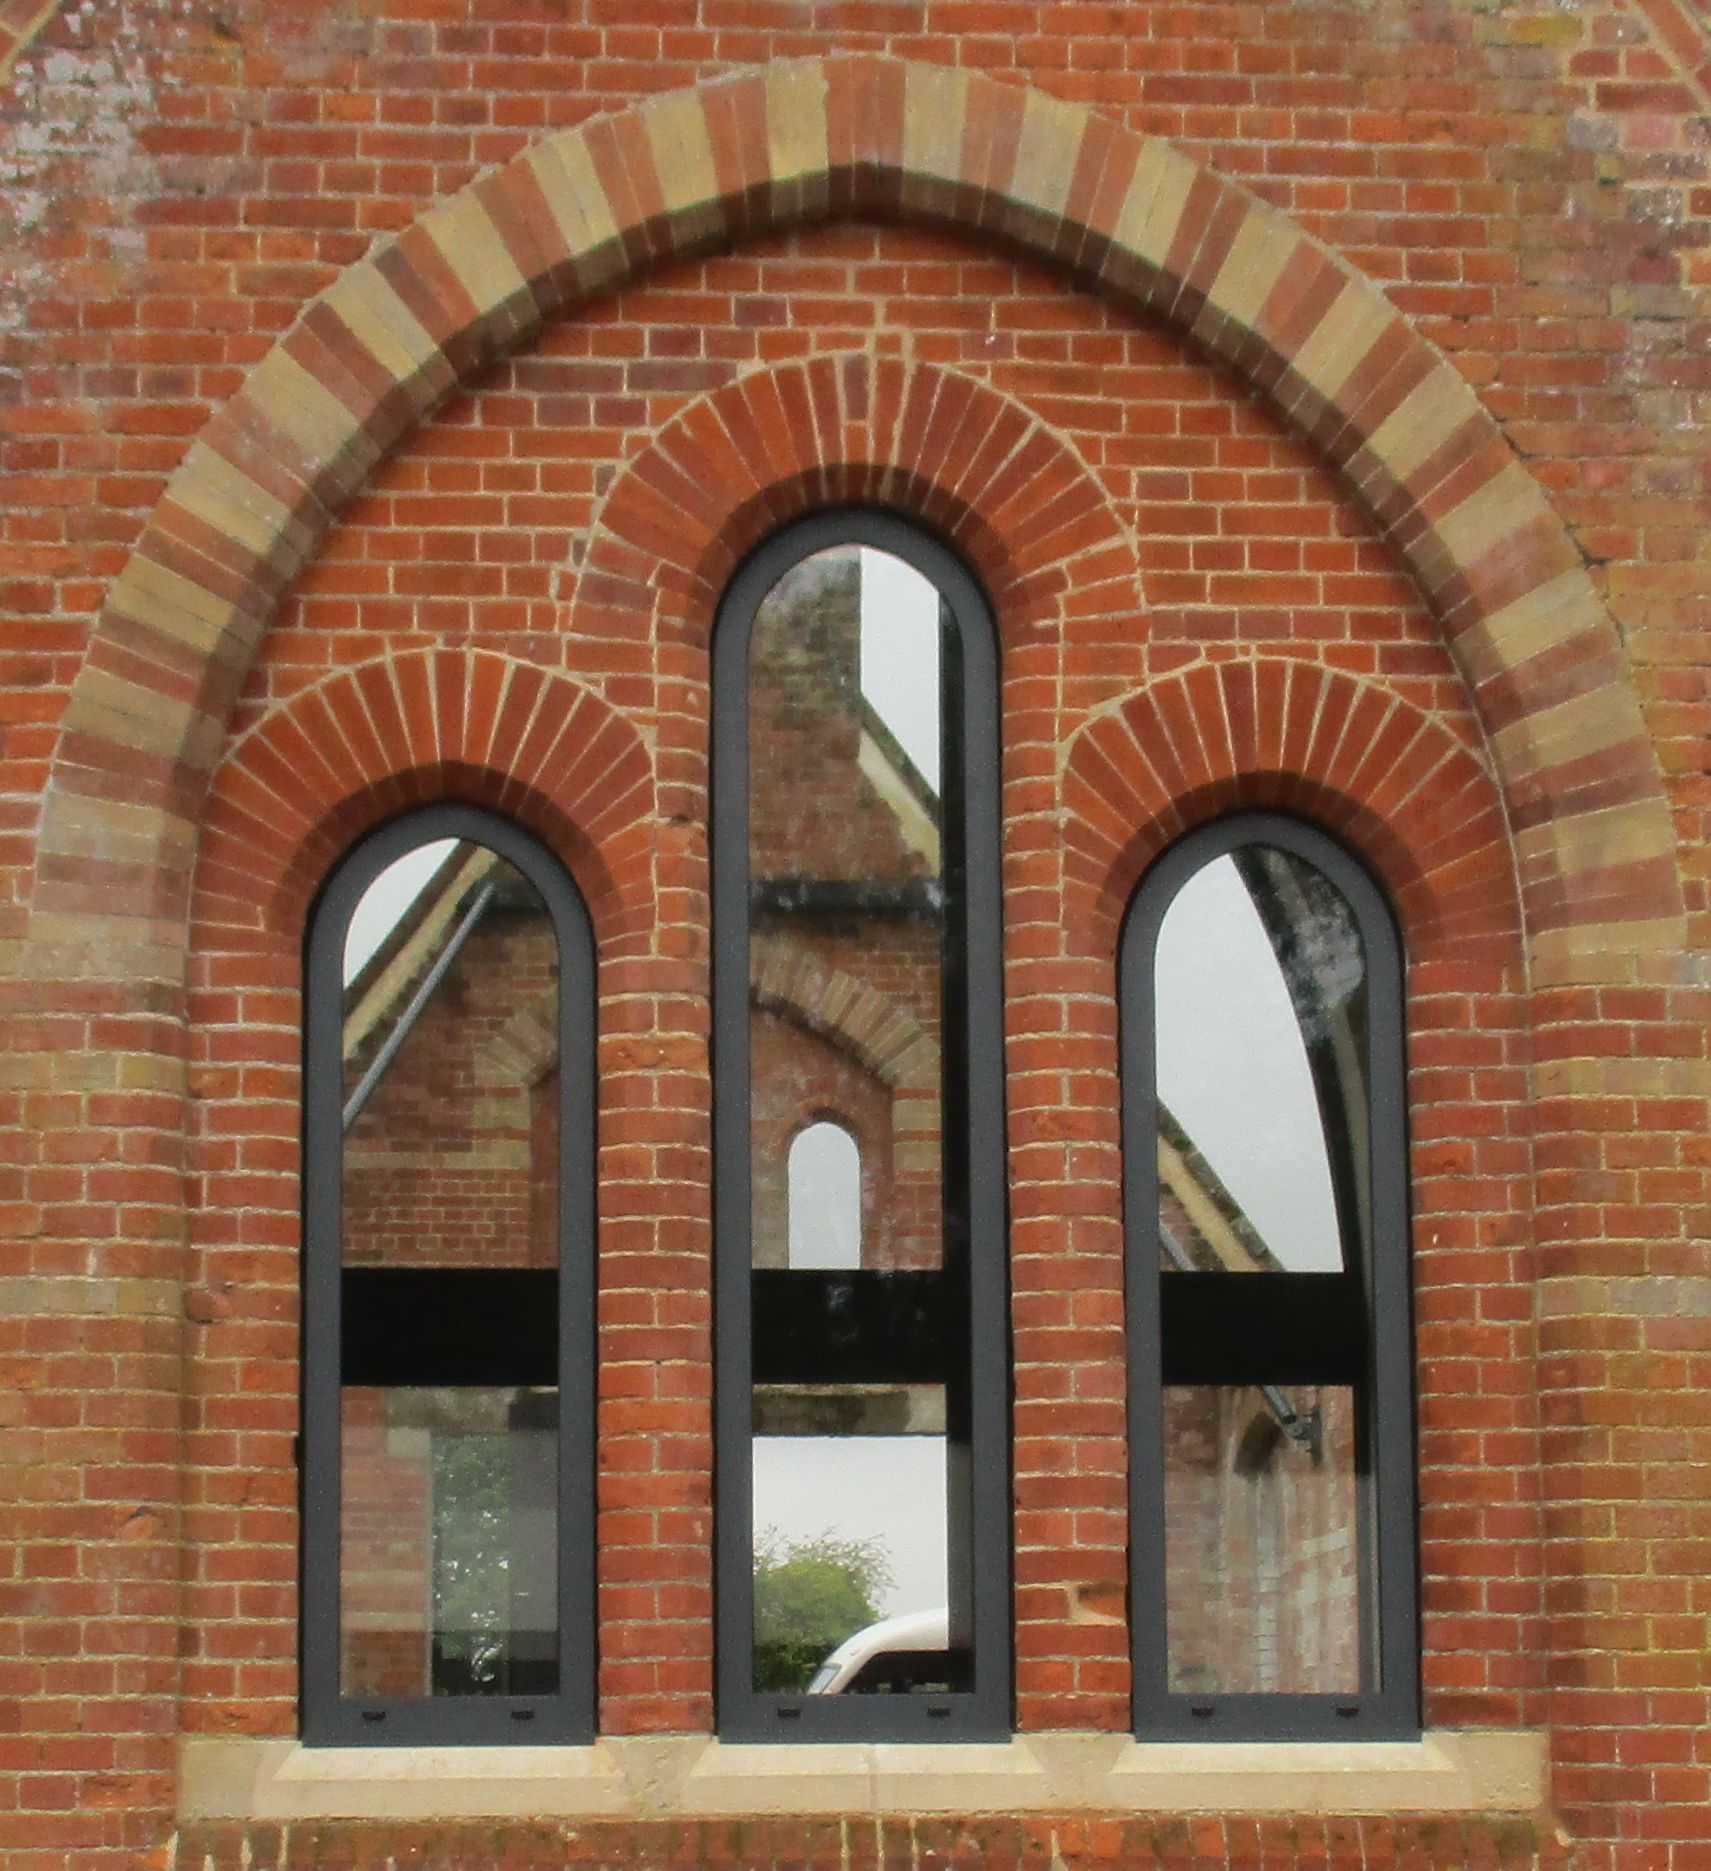 Feature aluminium windows in historic opening